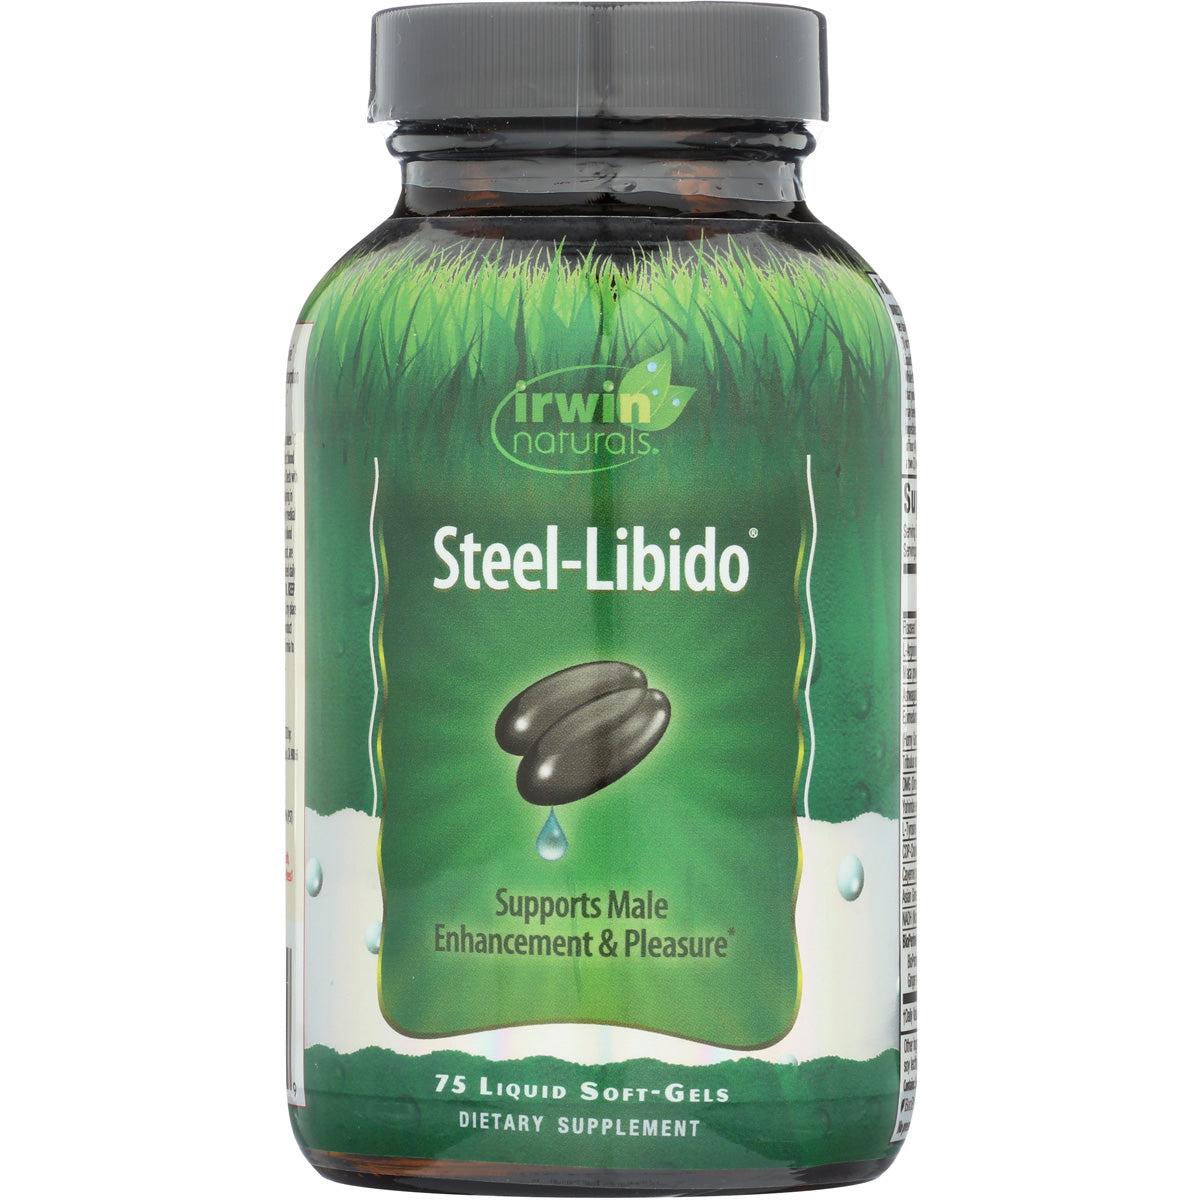 Steel-Libido For Men Unfi Irwin Naturals 87632